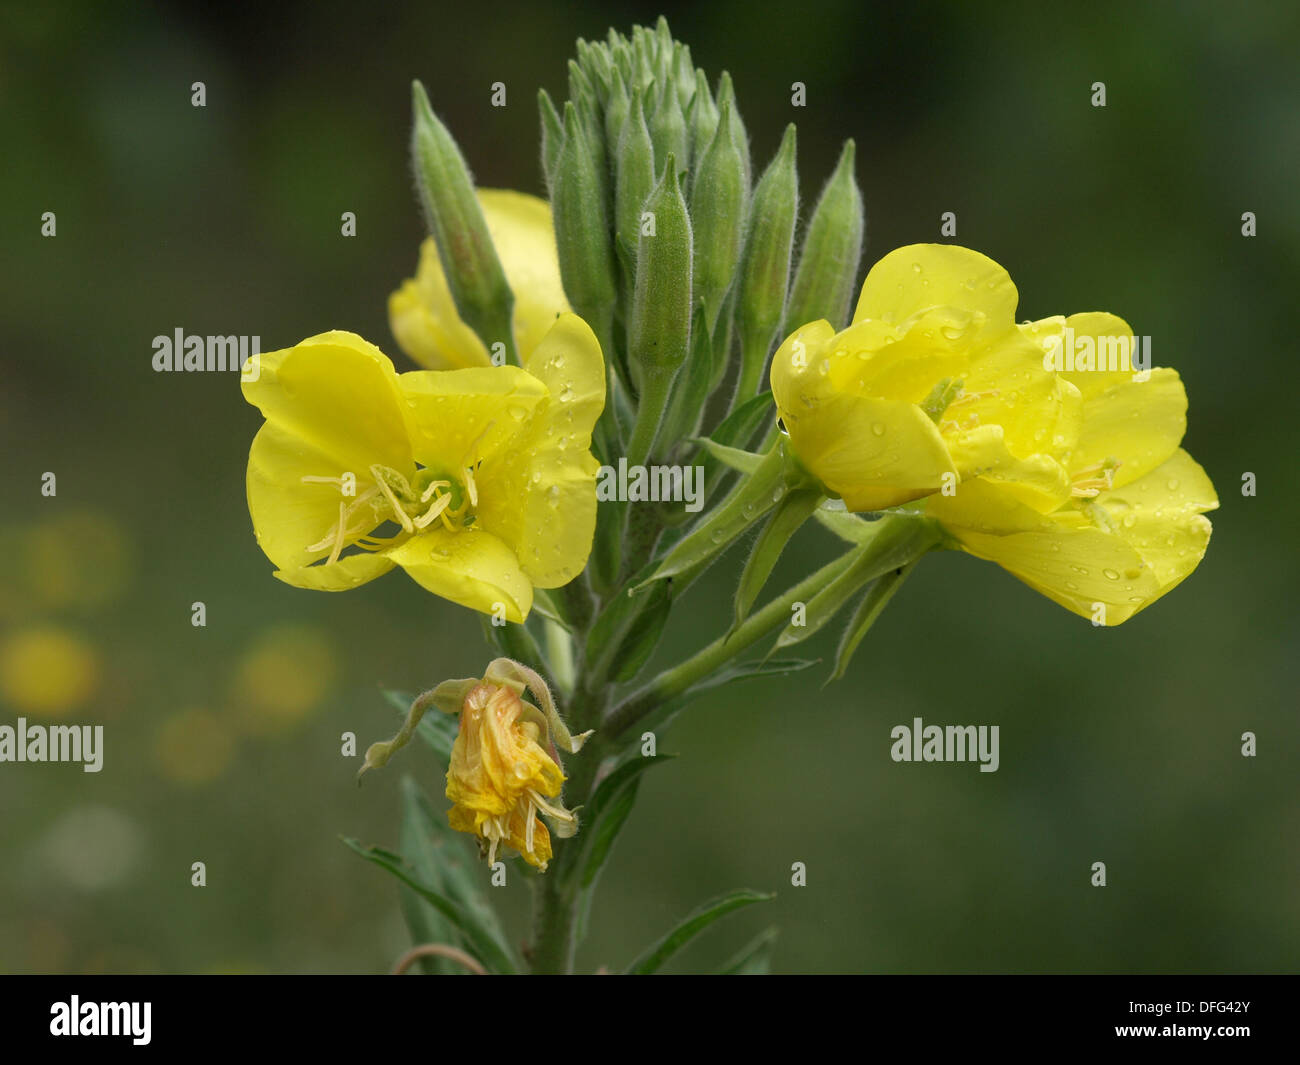 Common evening primrose / Oenothera biennis / Gewöhnliche Nachtkerze Stock Photo